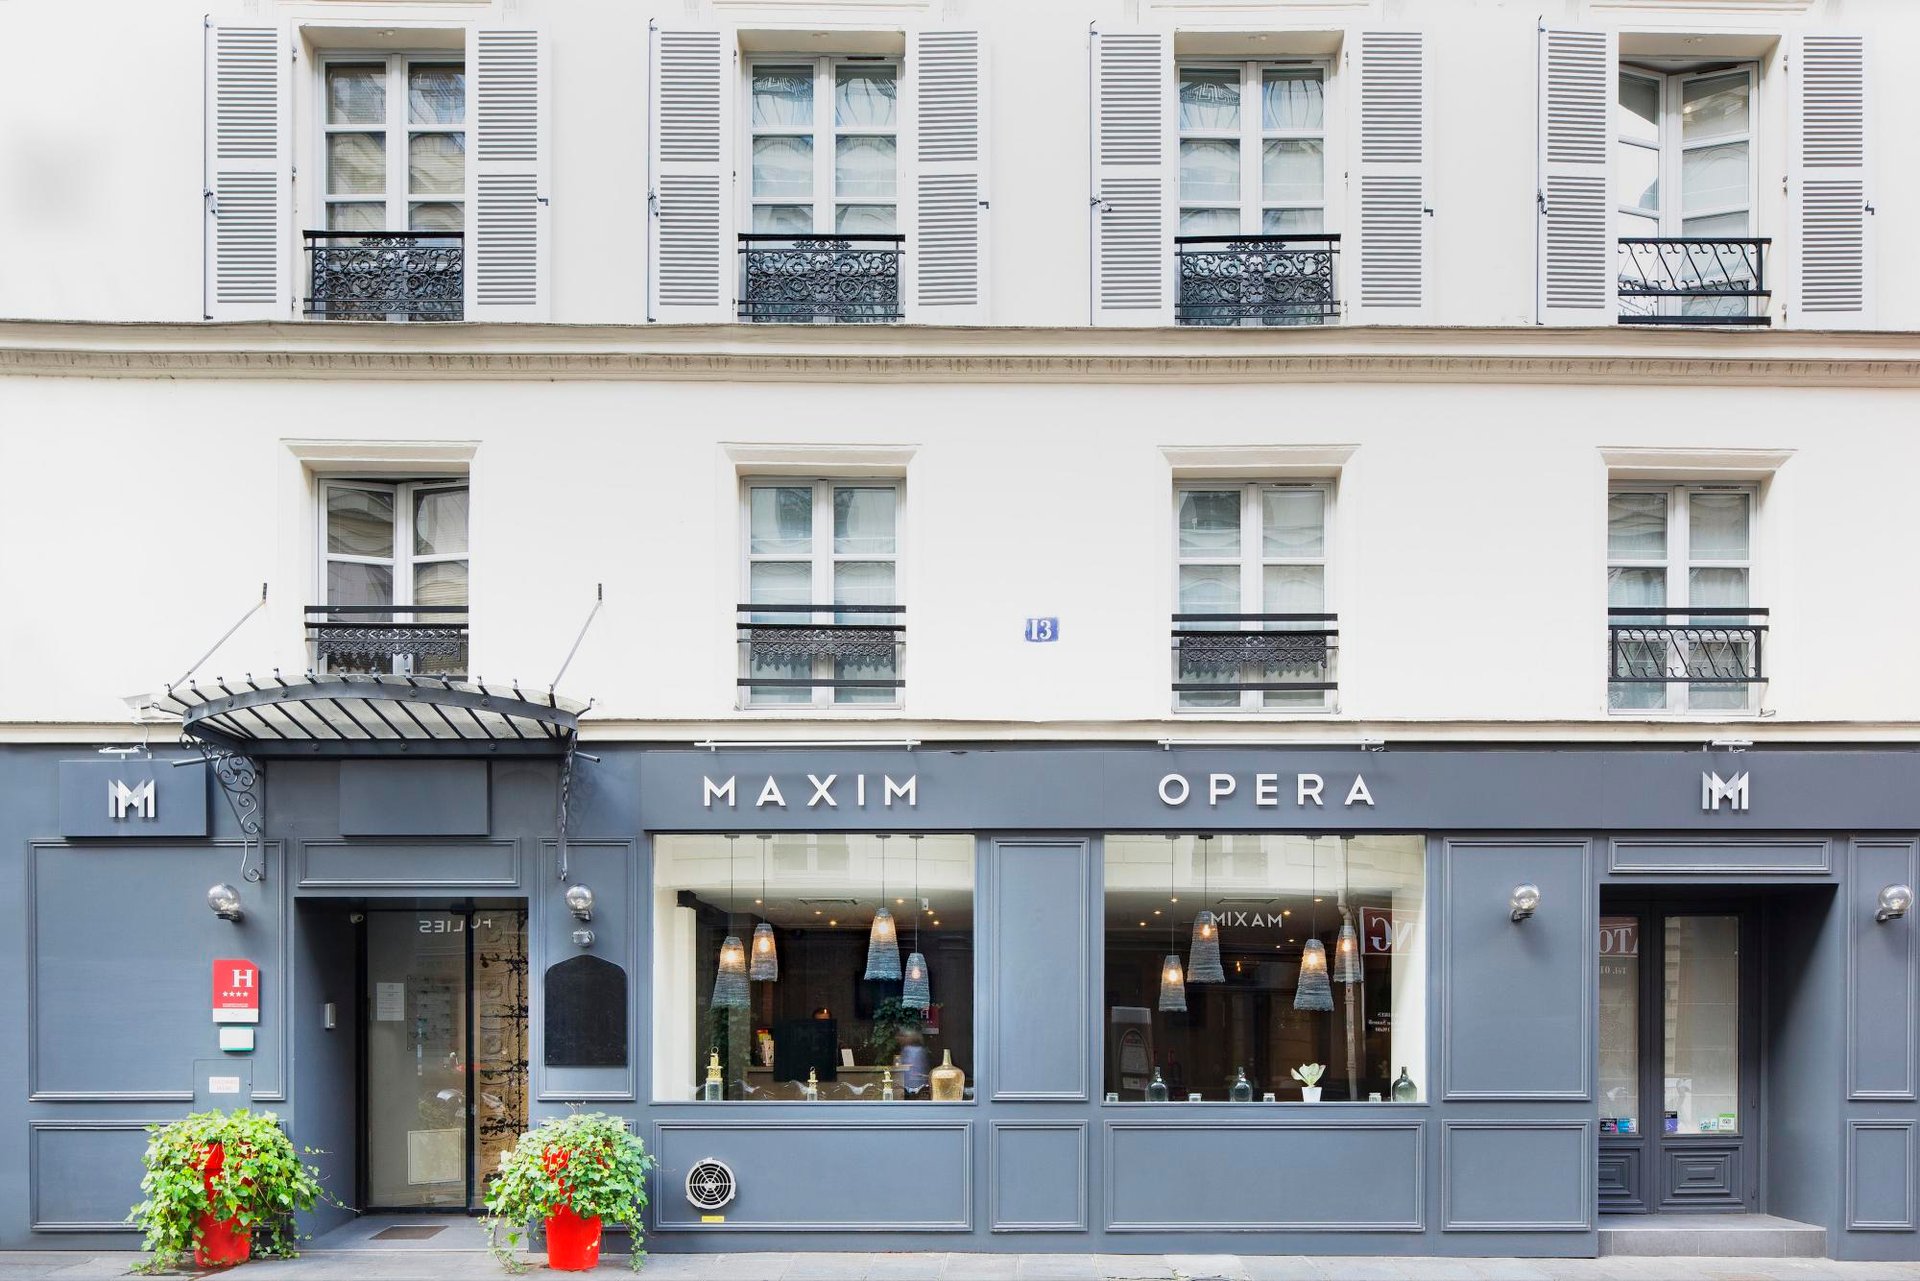 Hotel Maxim Opéra facade